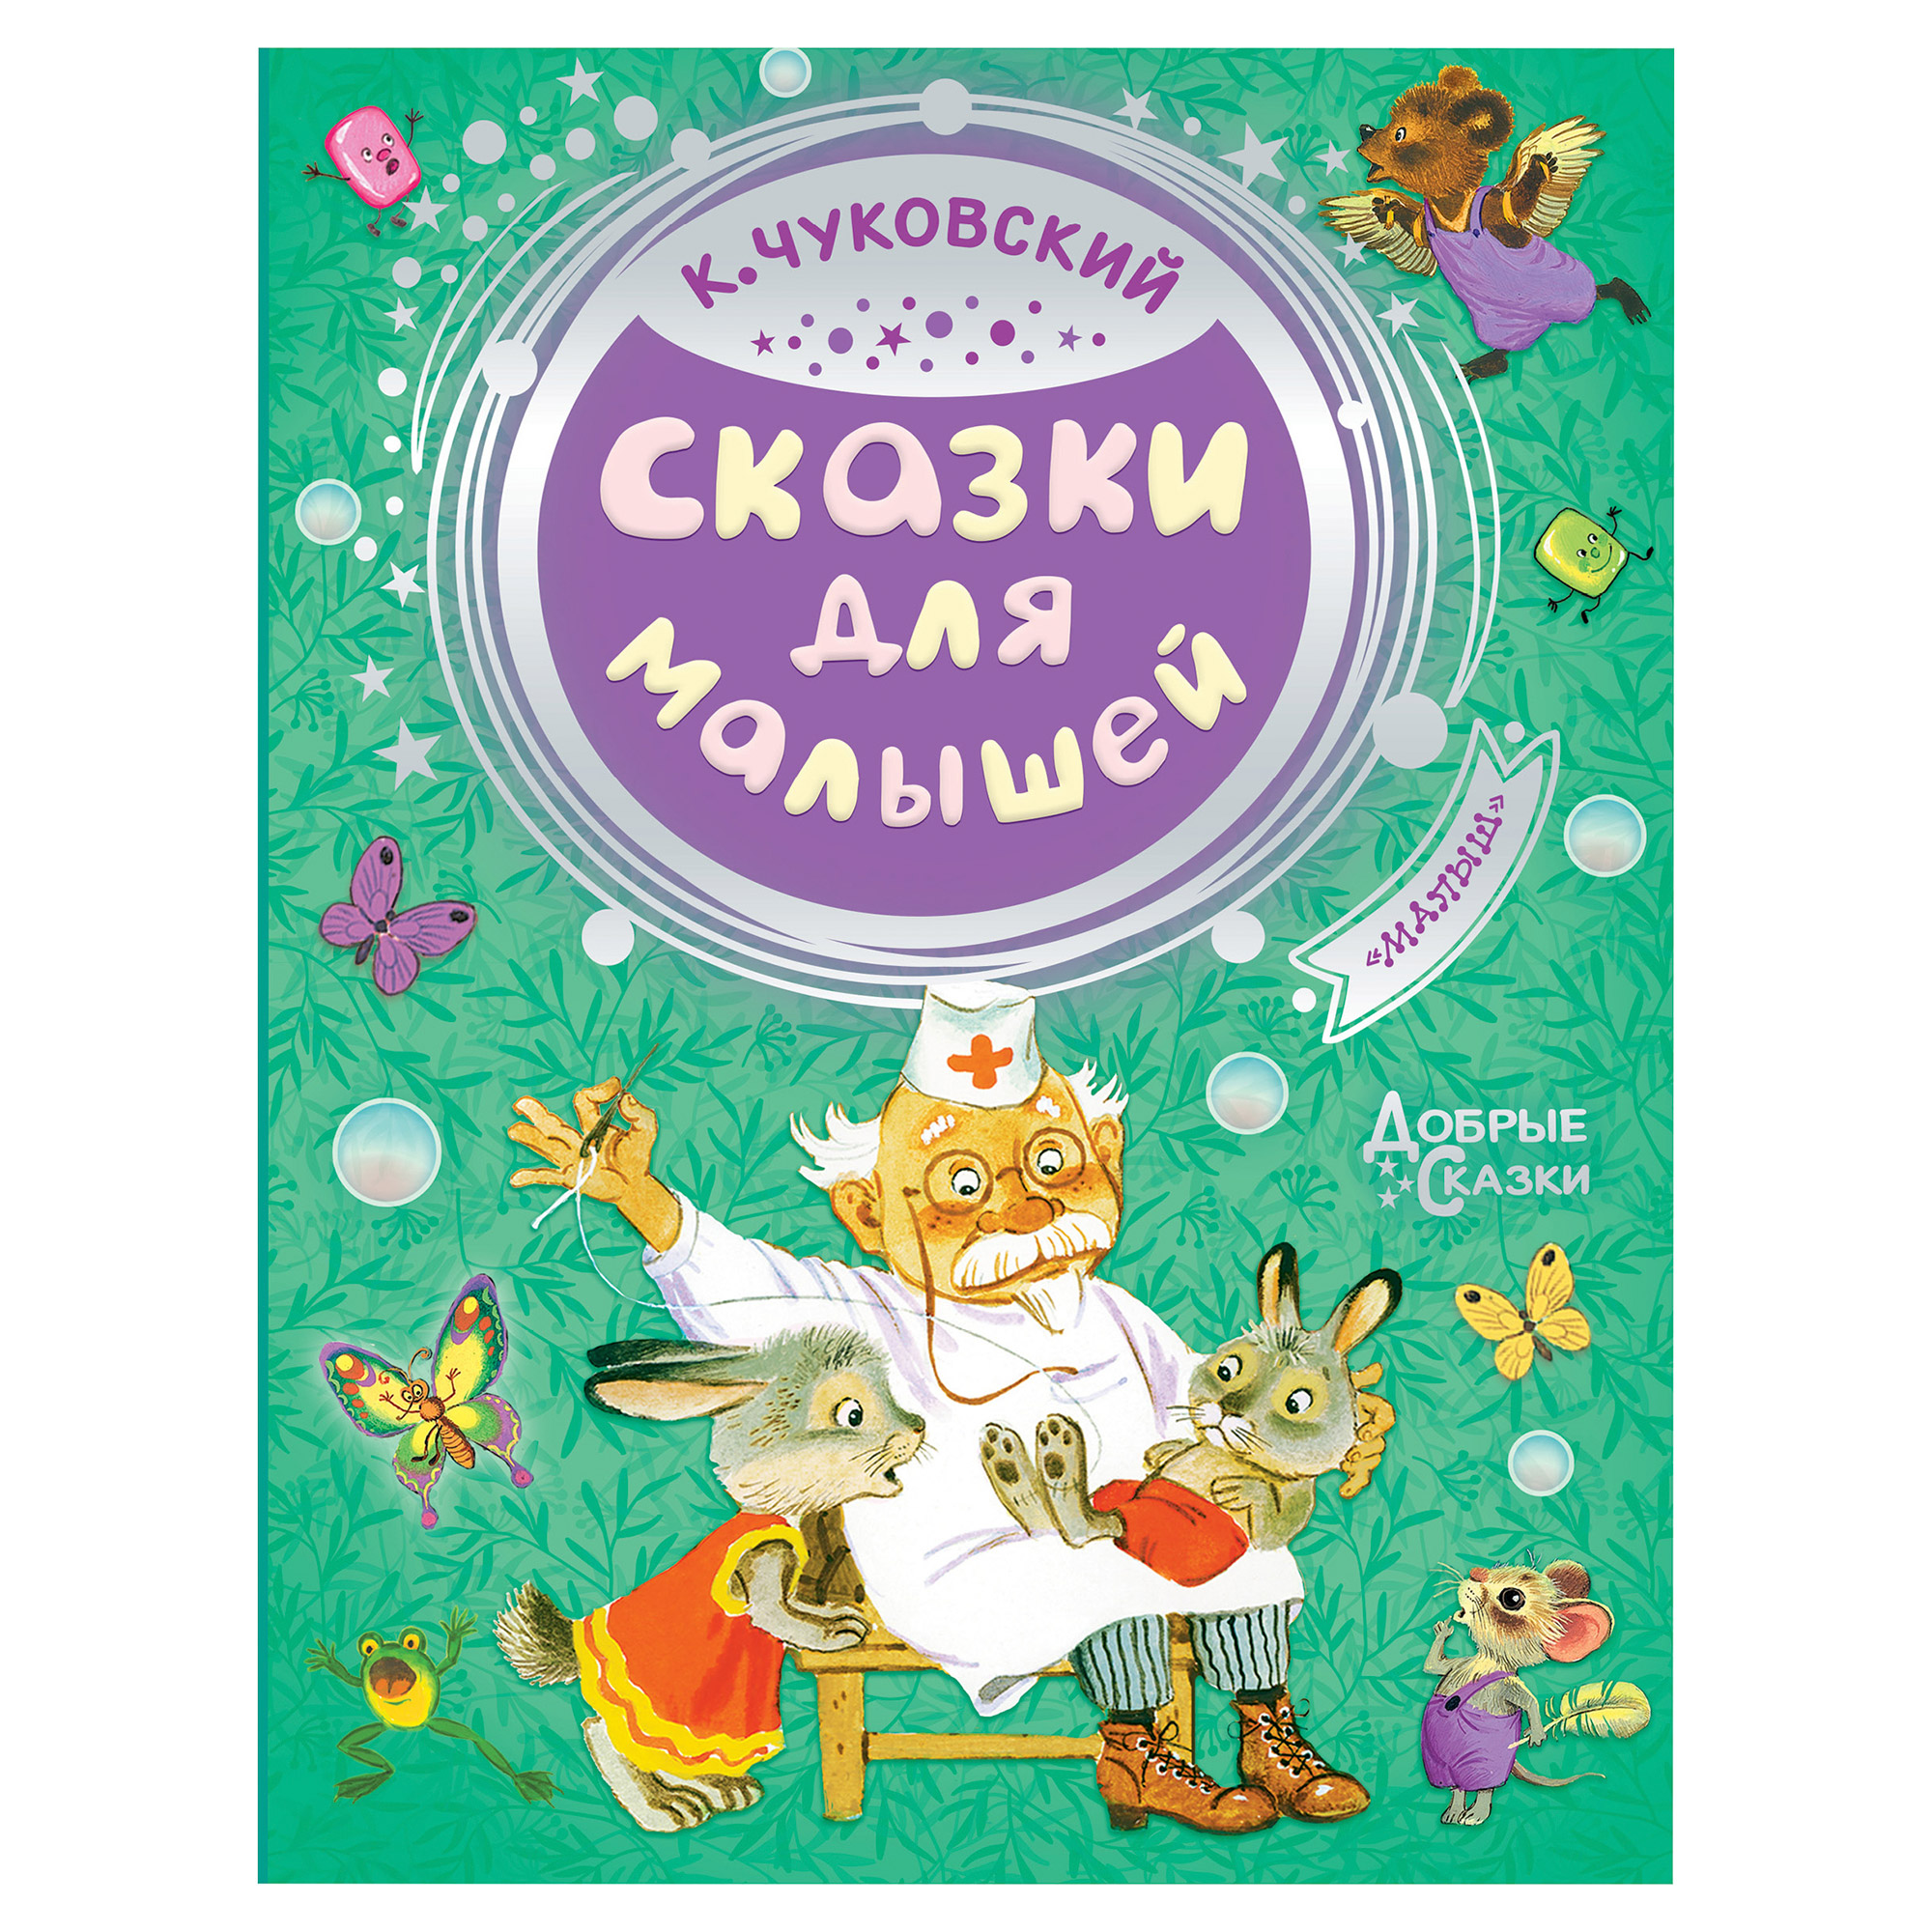 Книга АСТ Чуковский К.И. Сказки для малышей - фото 1